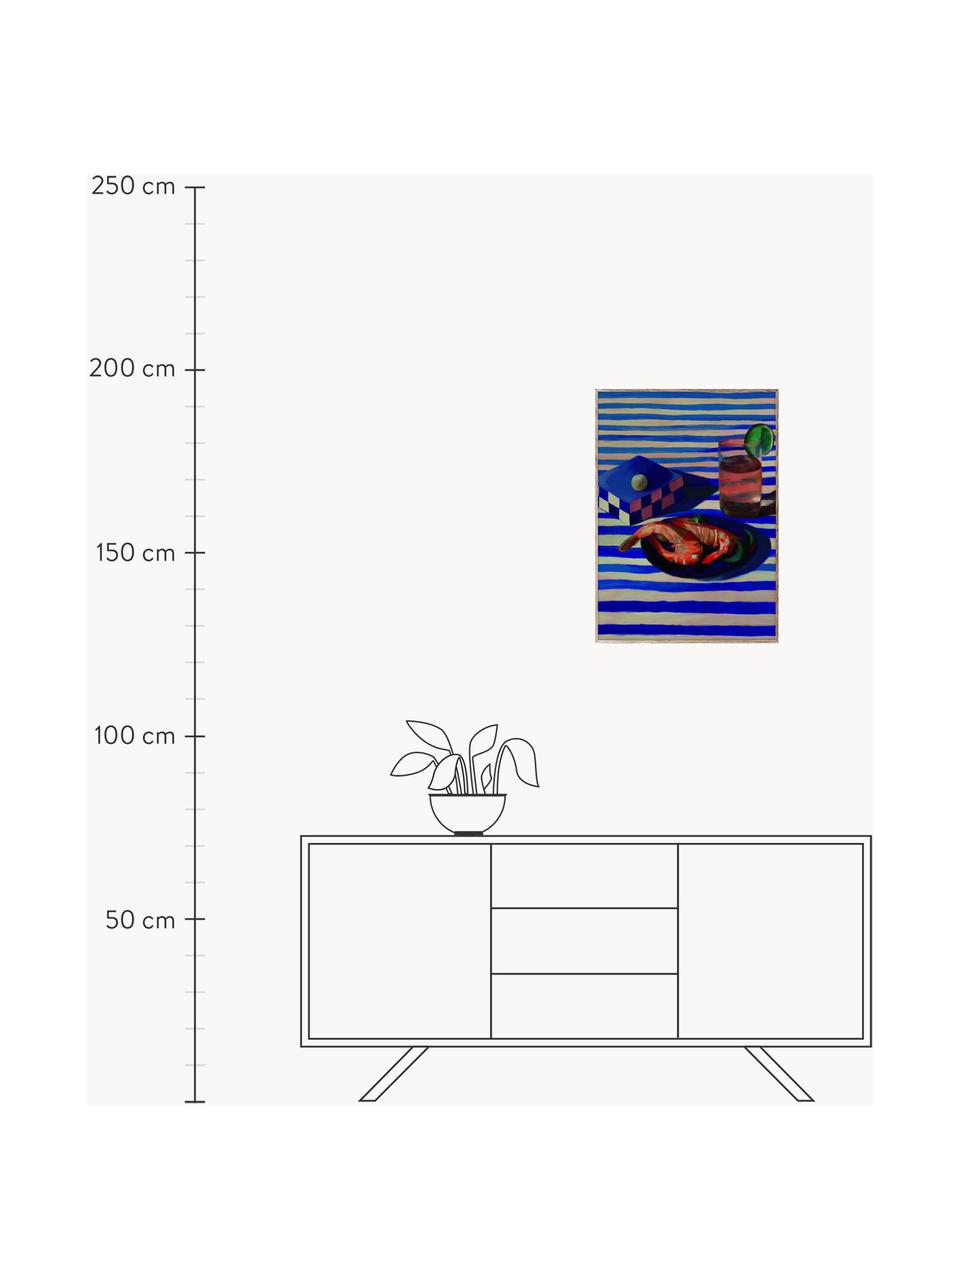 Plakát Shrimp & Stripes, 210g matný papír Hahnemühle, digitální tisk s 10 barvami odolnými vůči UV záření, Královská modrá, korálově červená, Š 30 cm, V 40 cm